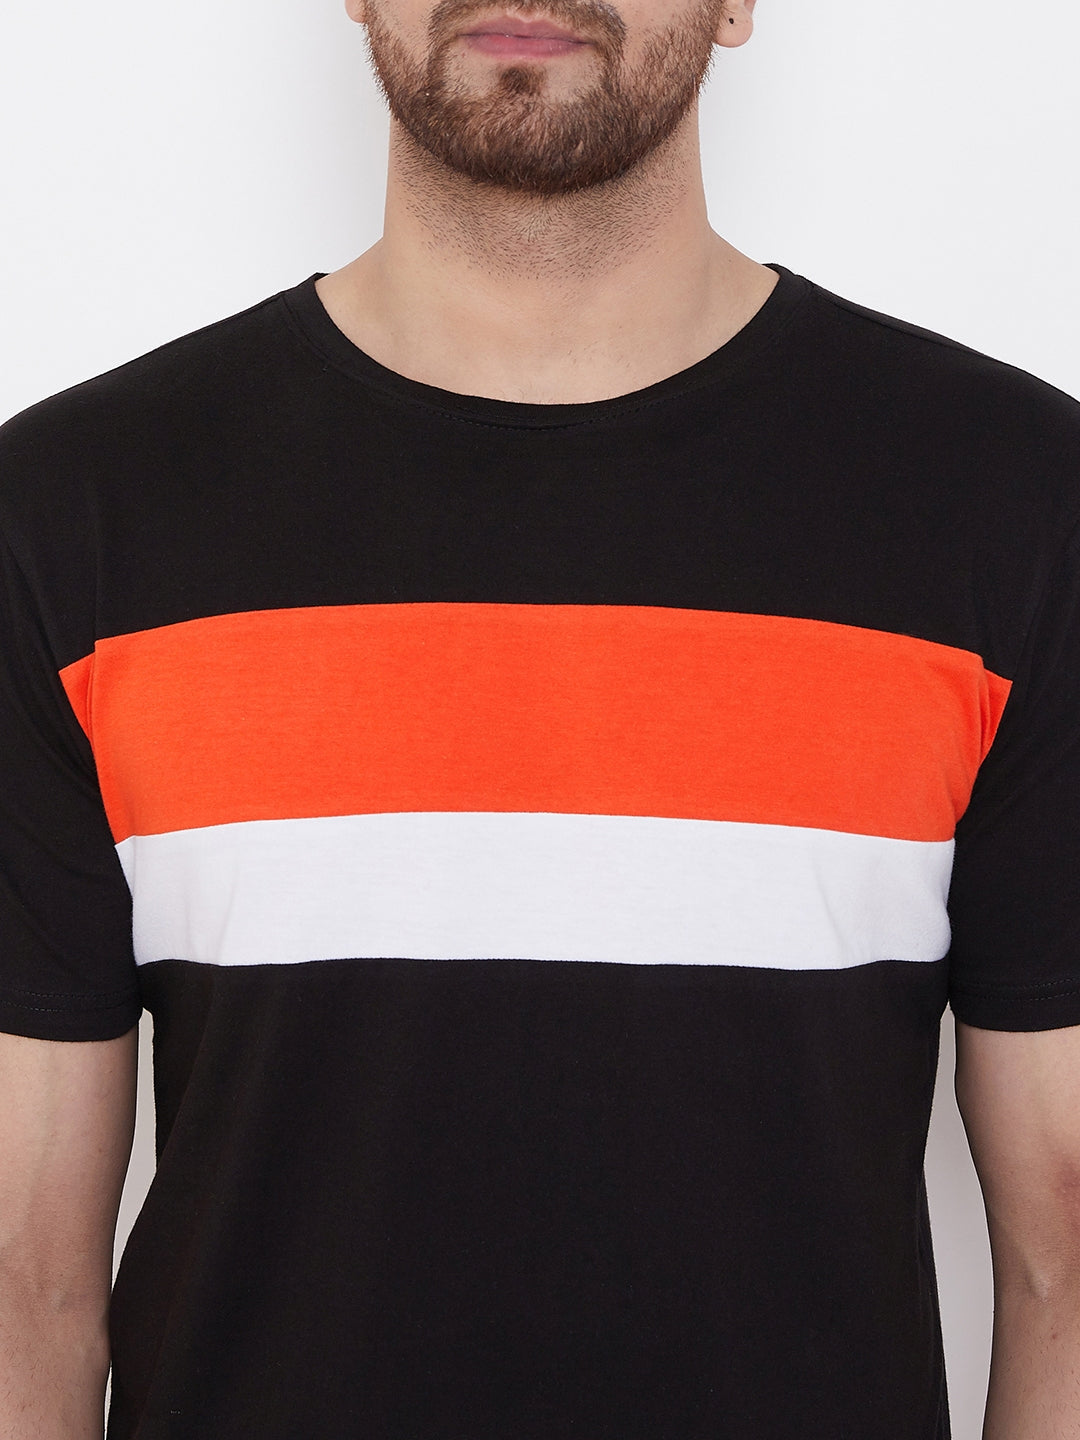 Black/Orange/White Color Block Men's Full Sleeve Round Neck T-Shirt